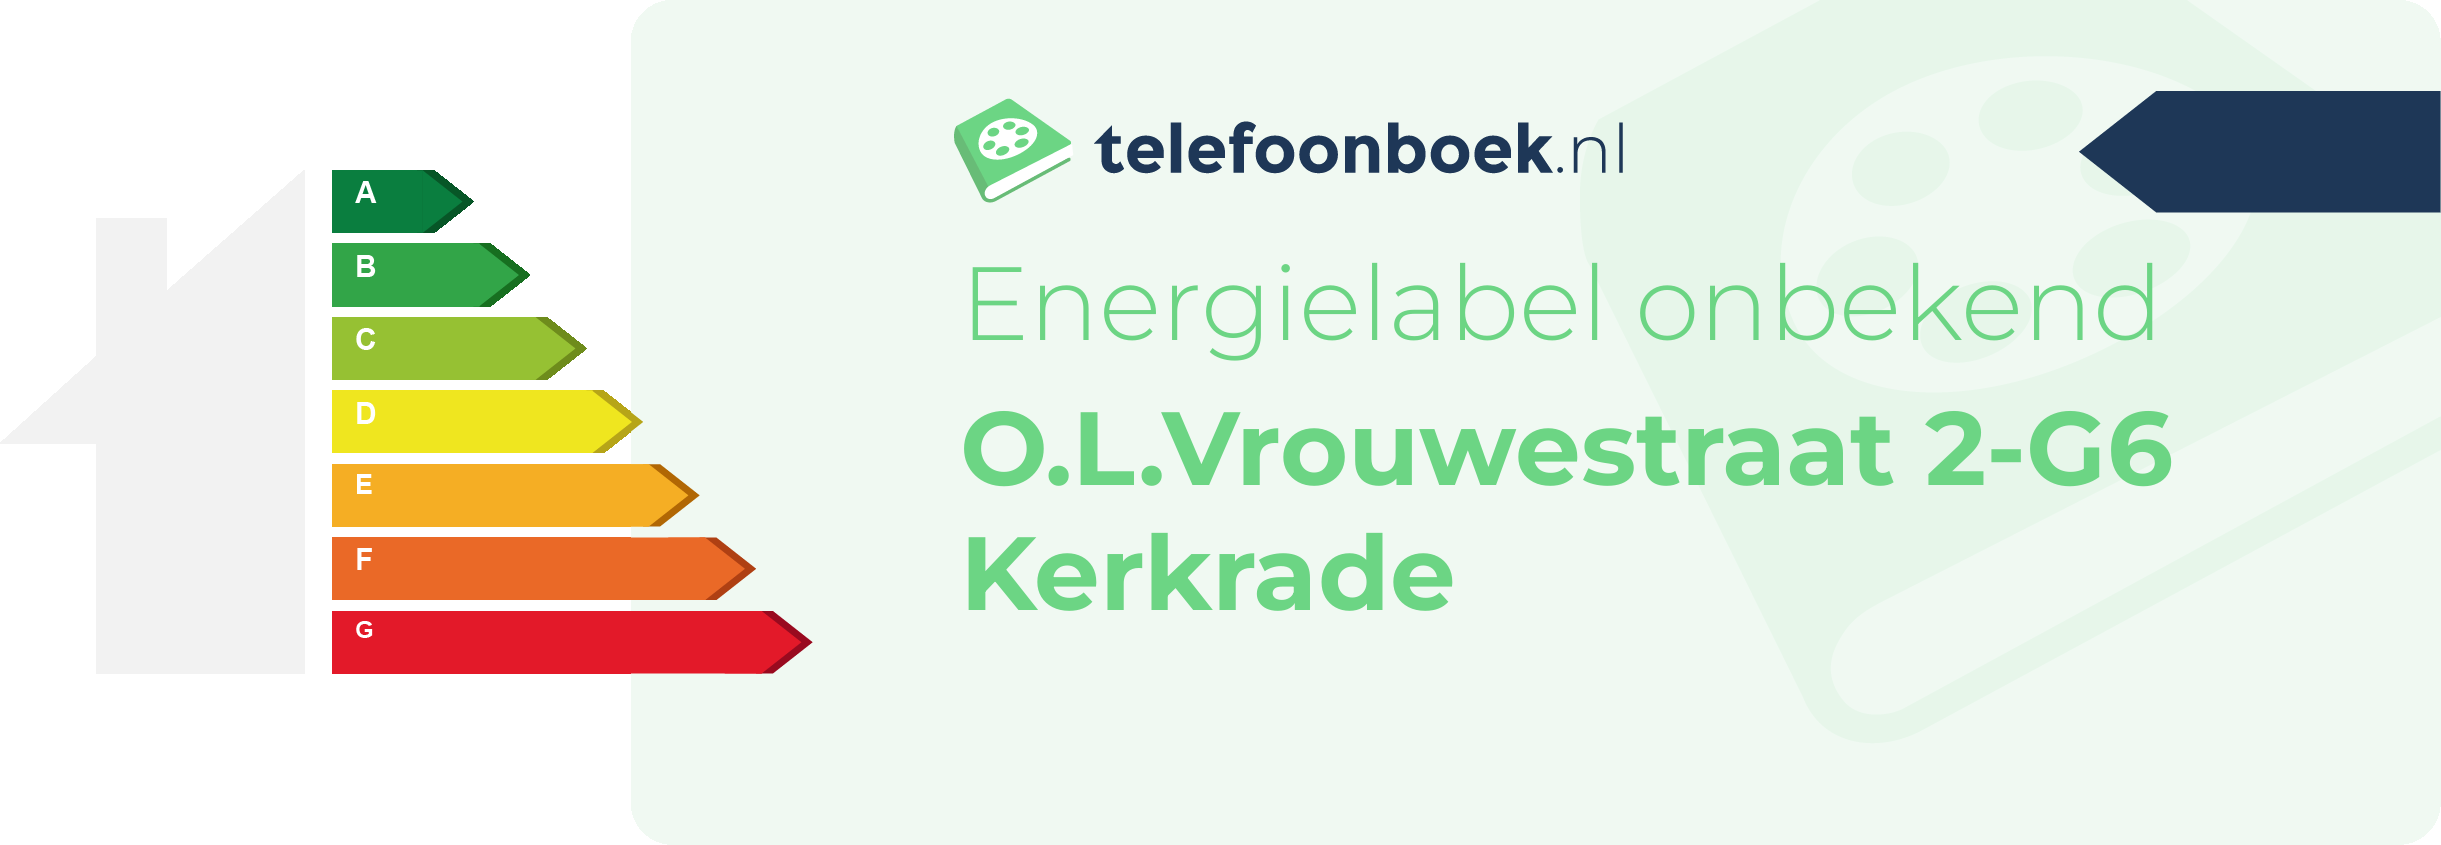 Energielabel O.L.Vrouwestraat 2-G6 Kerkrade